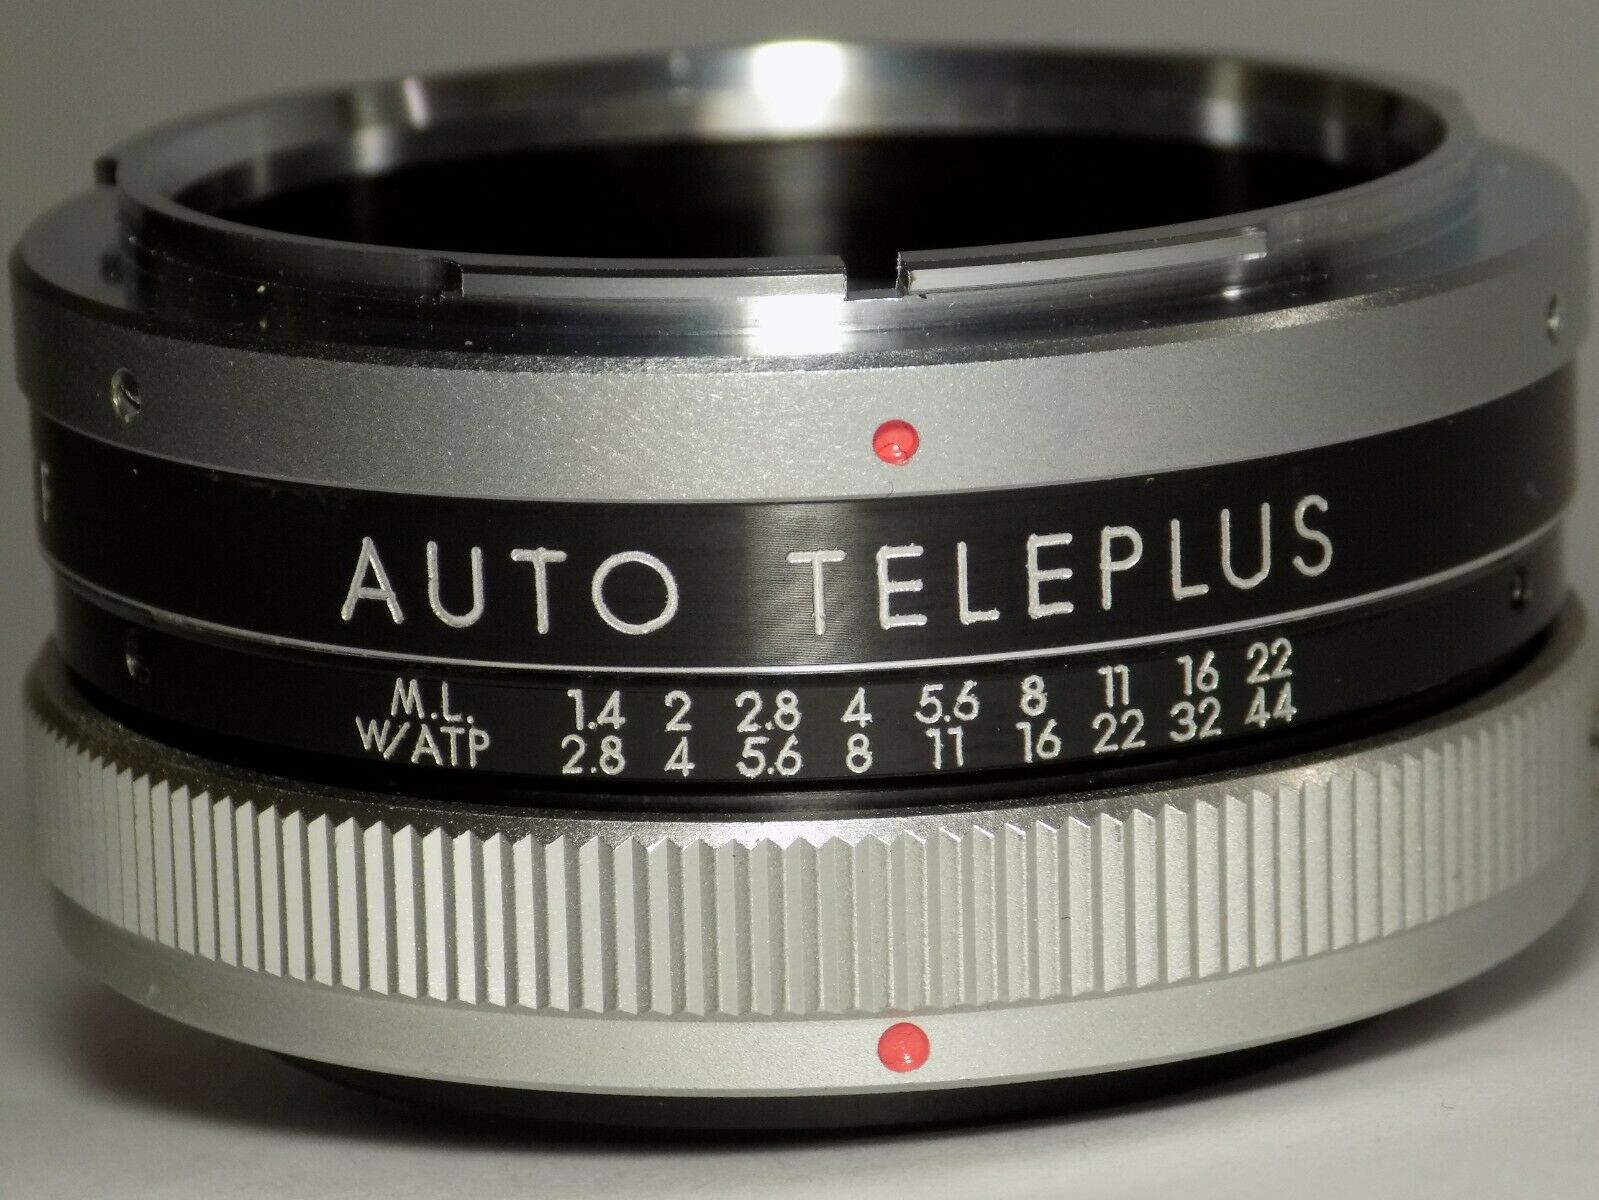 Auto Teleplus 2x Converter Lens Type Cf